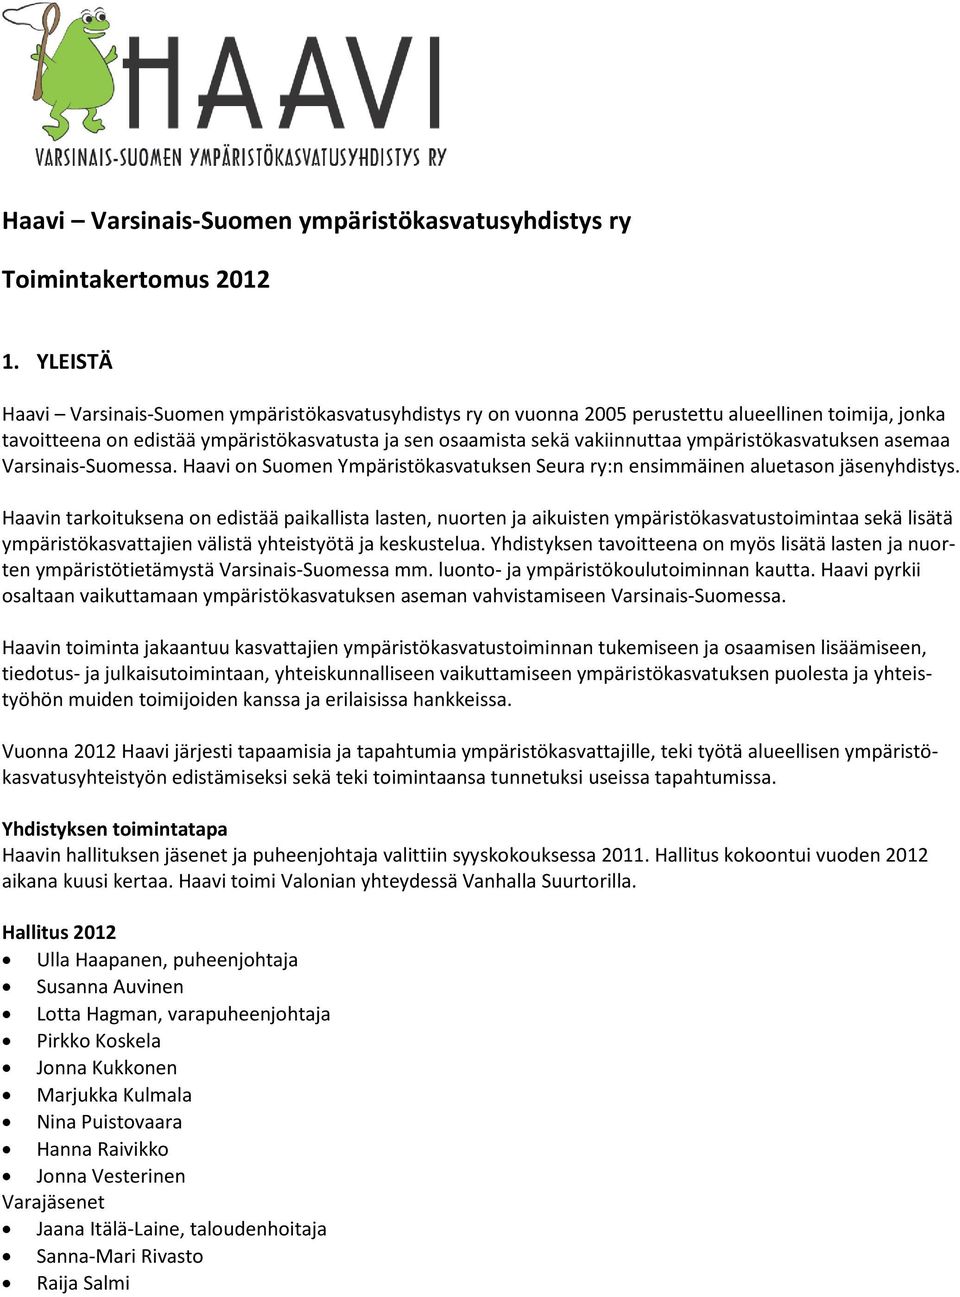 ympäristökasvatuksen asemaa Varsinais-Suomessa. Haavi on Suomen Ympäristökasvatuksen Seura ry:n ensimmäinen aluetason jäsenyhdistys.